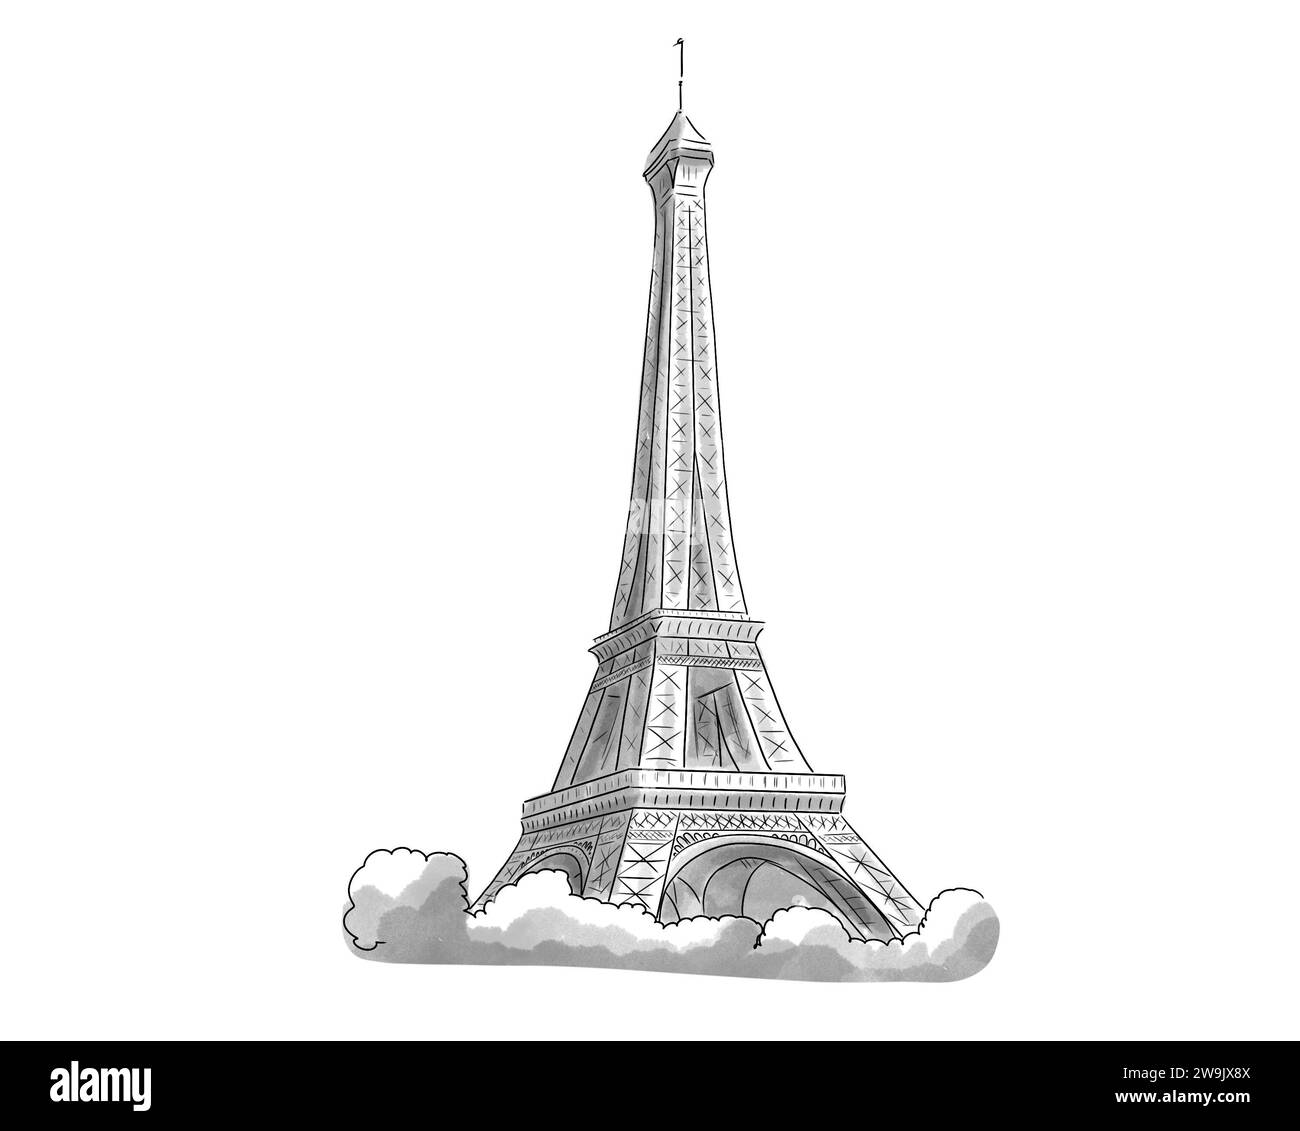 Illustration en noir et blanc de Monument de Paris, Tour Eiffel Stockfoto